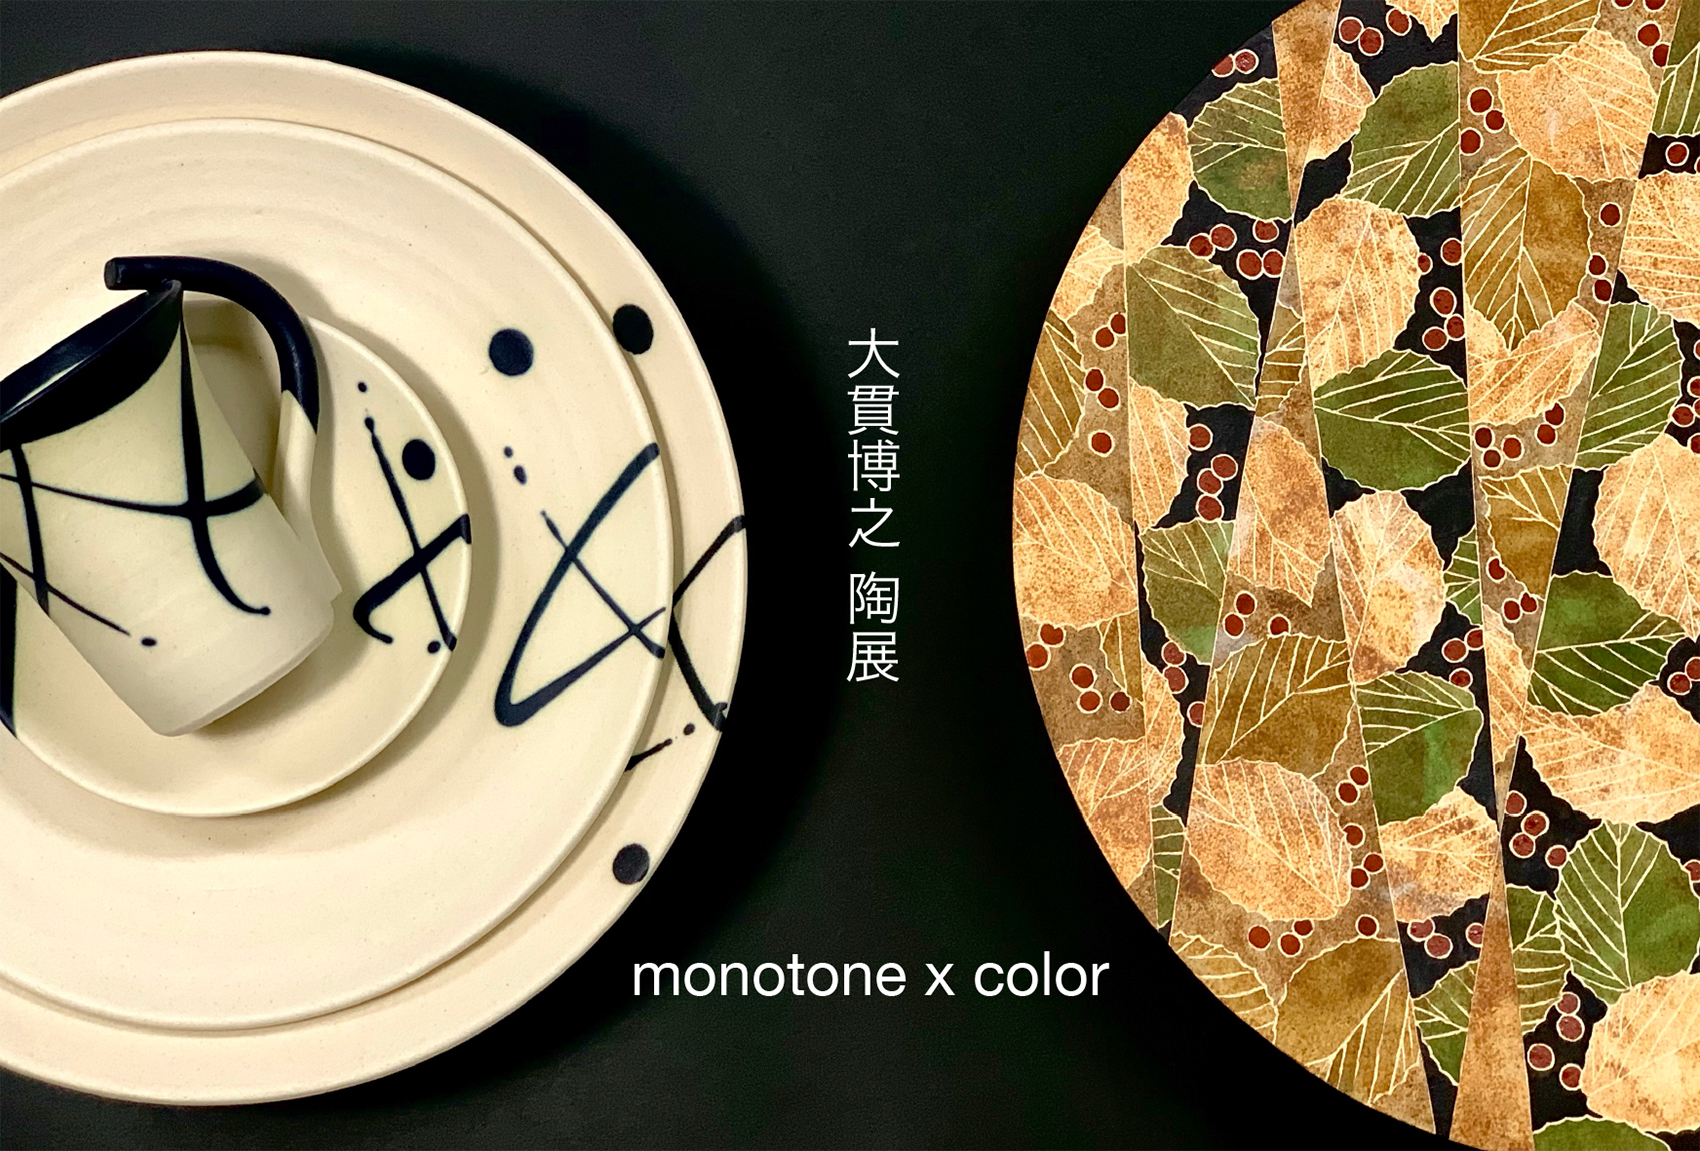 monotone x monitor 大貫博之 陶展 2022年9月3日(土)～11日(日) ギャラリーいわき